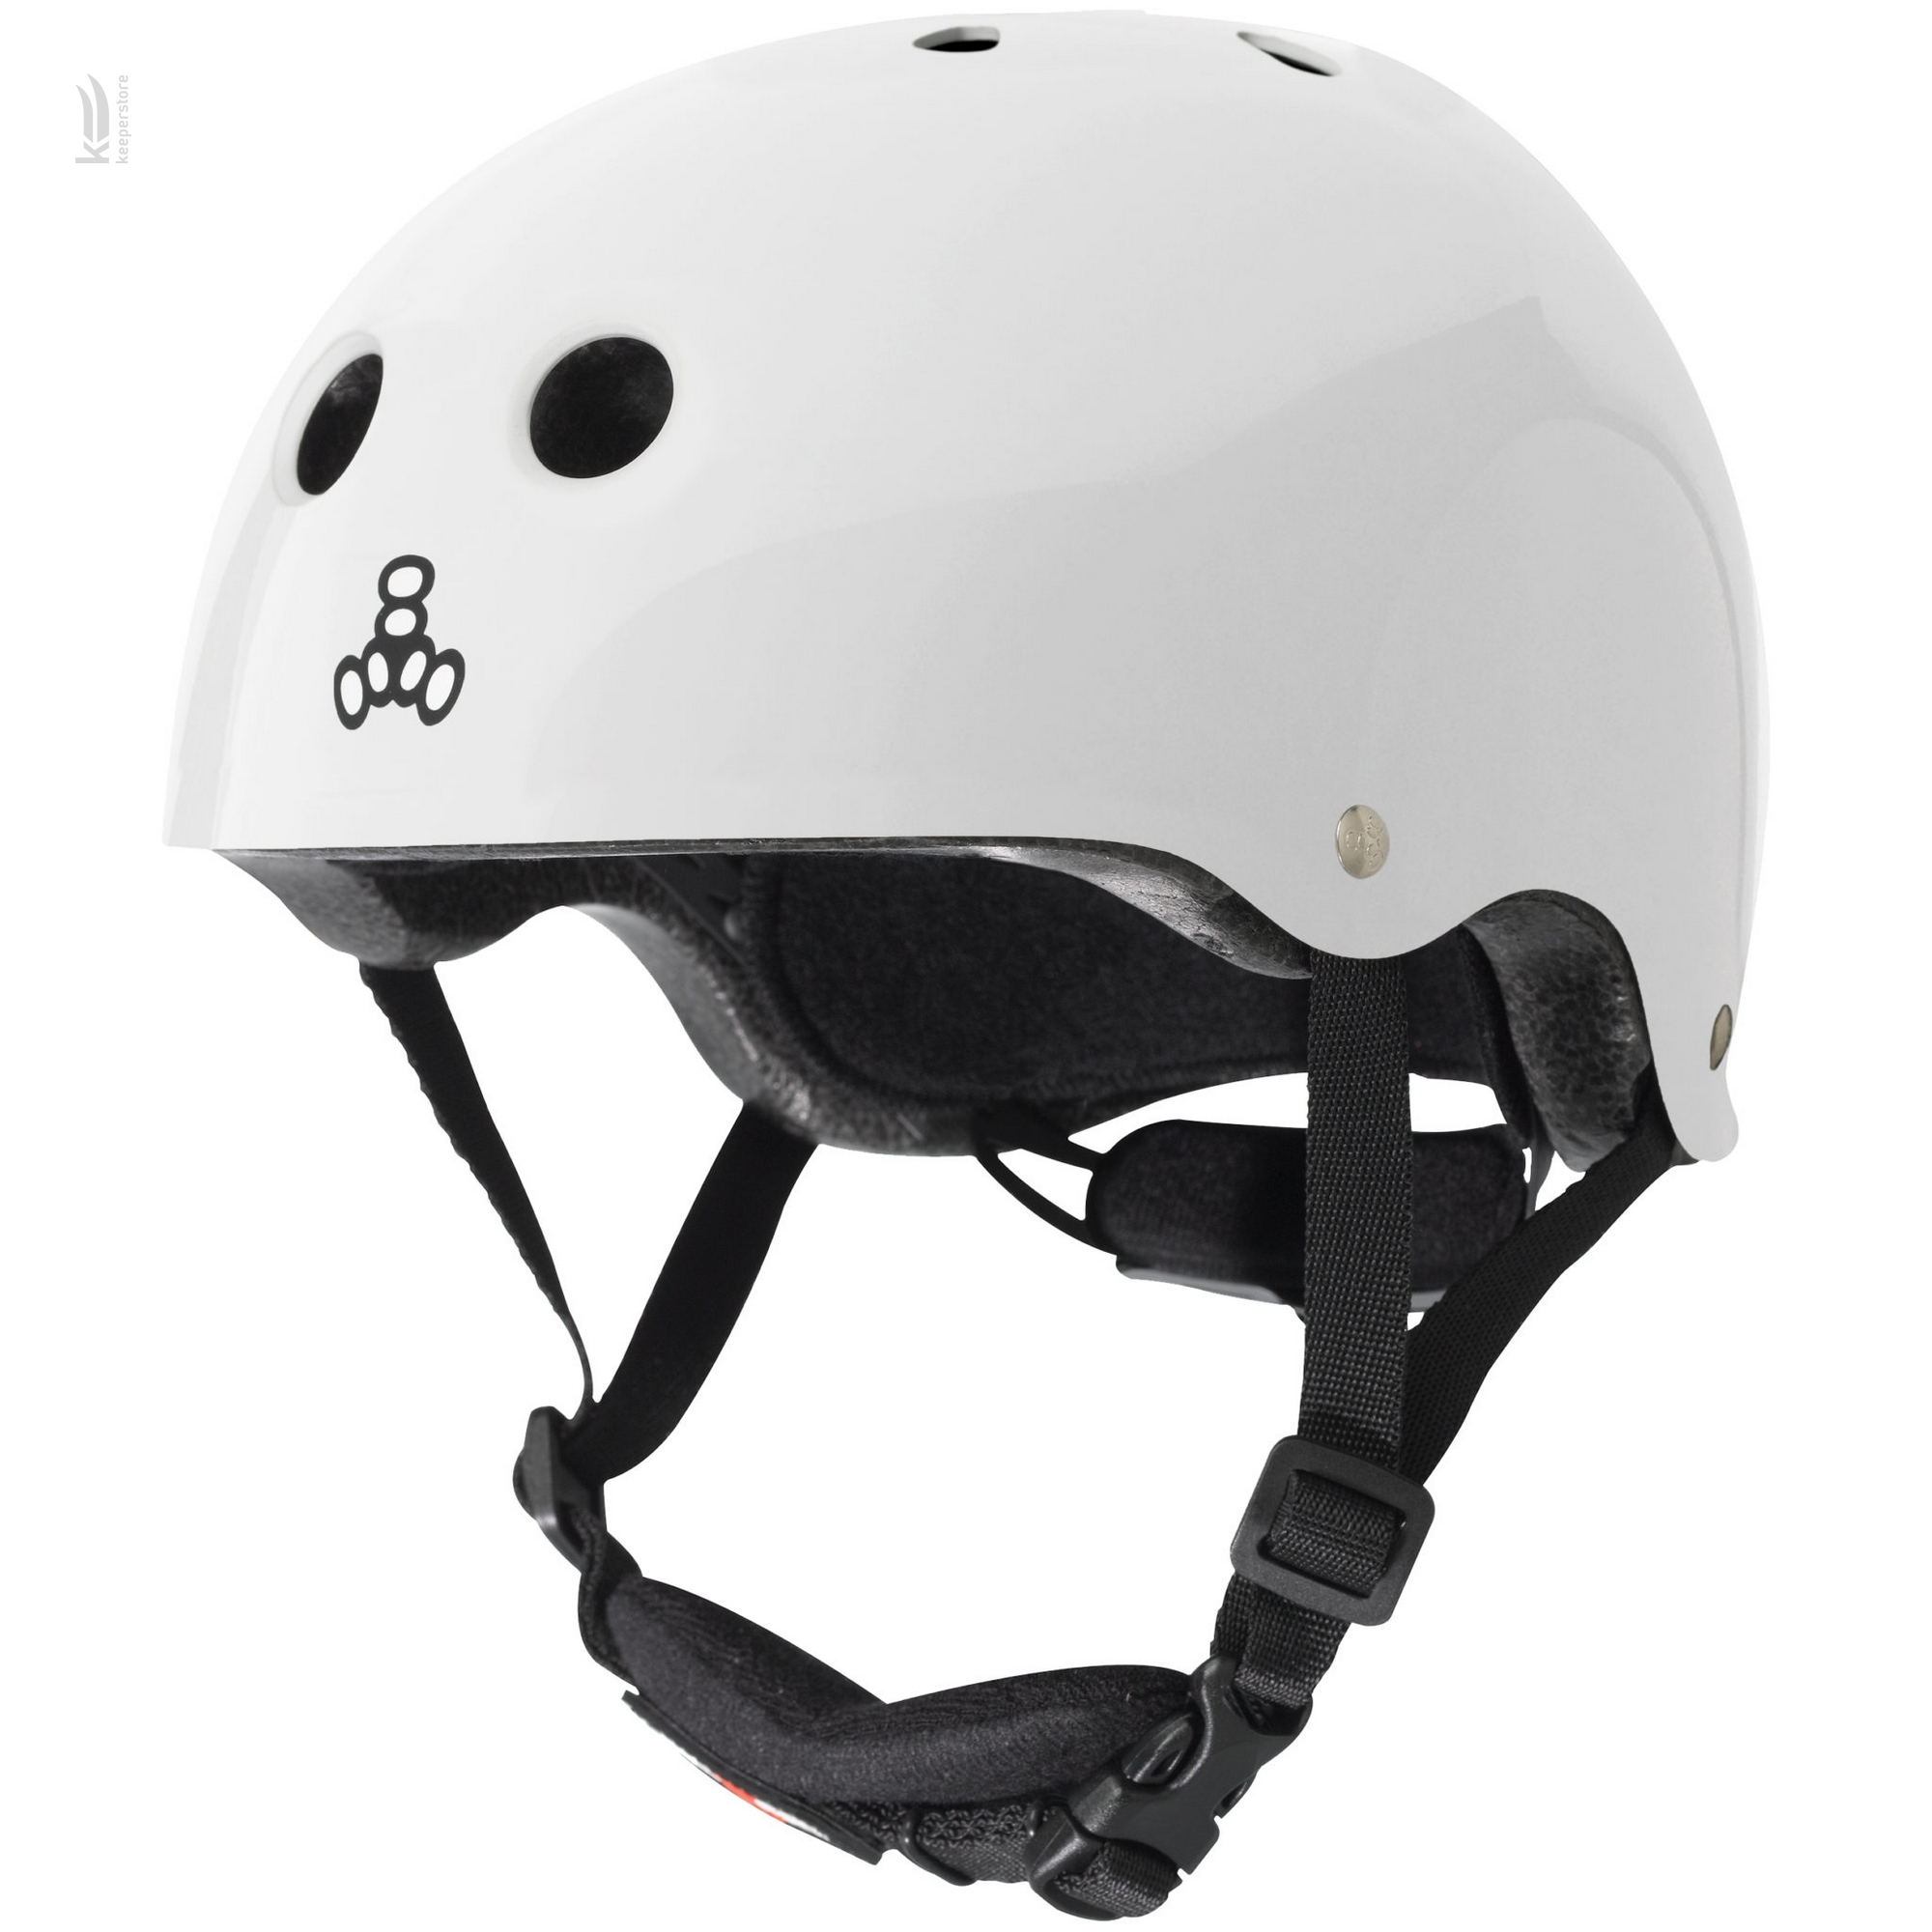 Защитный шлем для детей Triple8 Lil 8 White